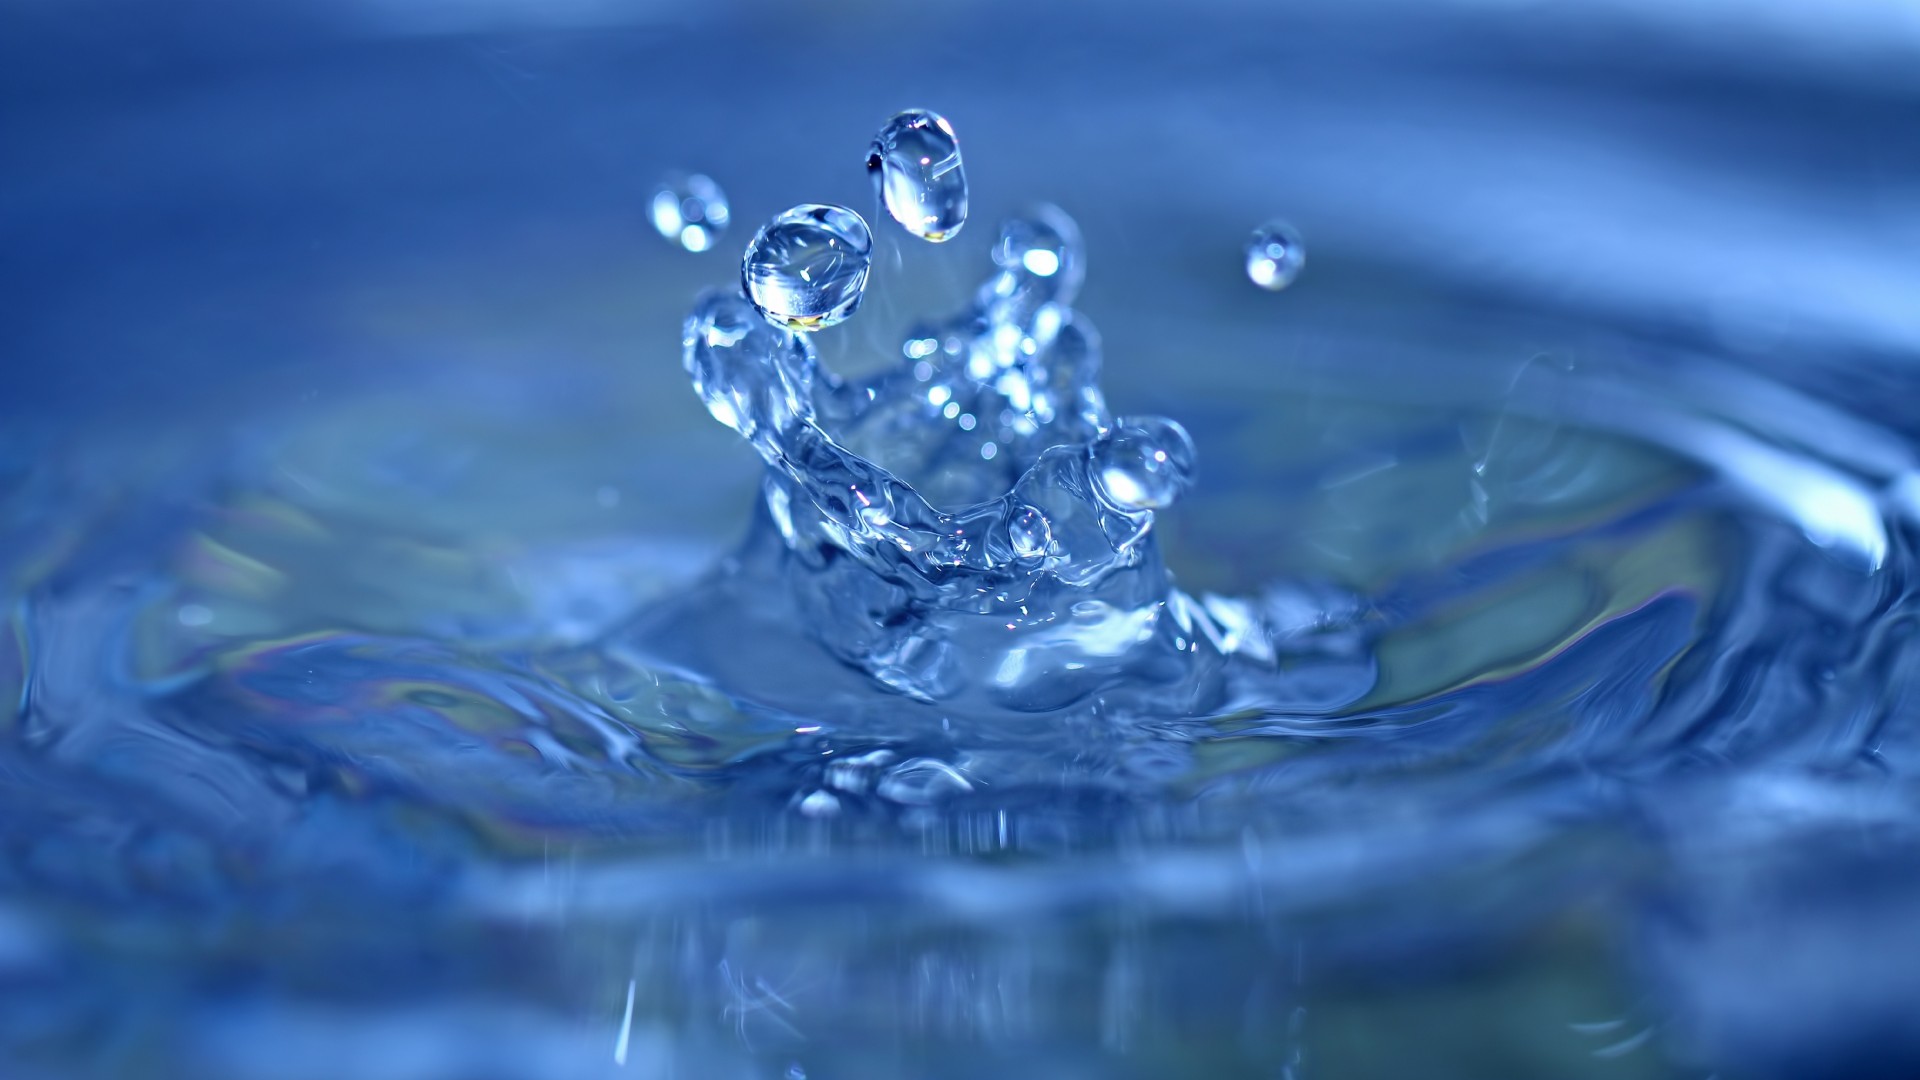 вода, 4k, 5k, всплеск, капли, макро, голубая, water, 4k, 5k wallpaper, splash, drops, close-up, macro, blue (horizontal)